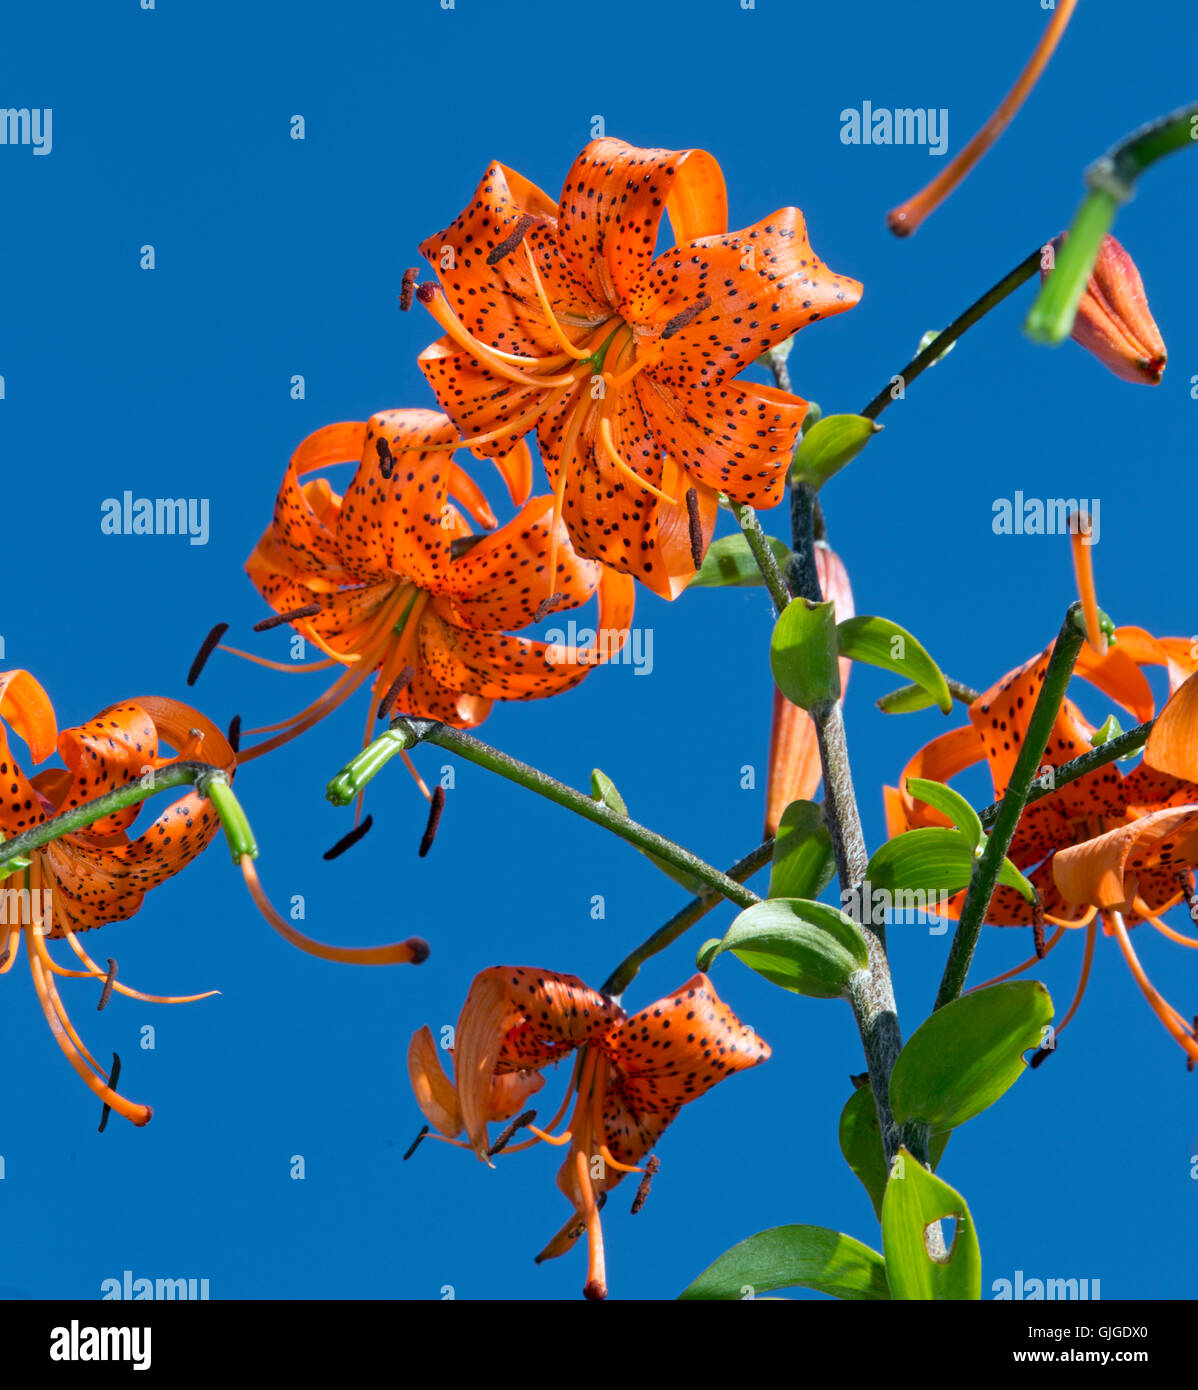 Tiger gigli Lilium lancifolium o Lilium tigrinum contro un cielo blu Foto Stock